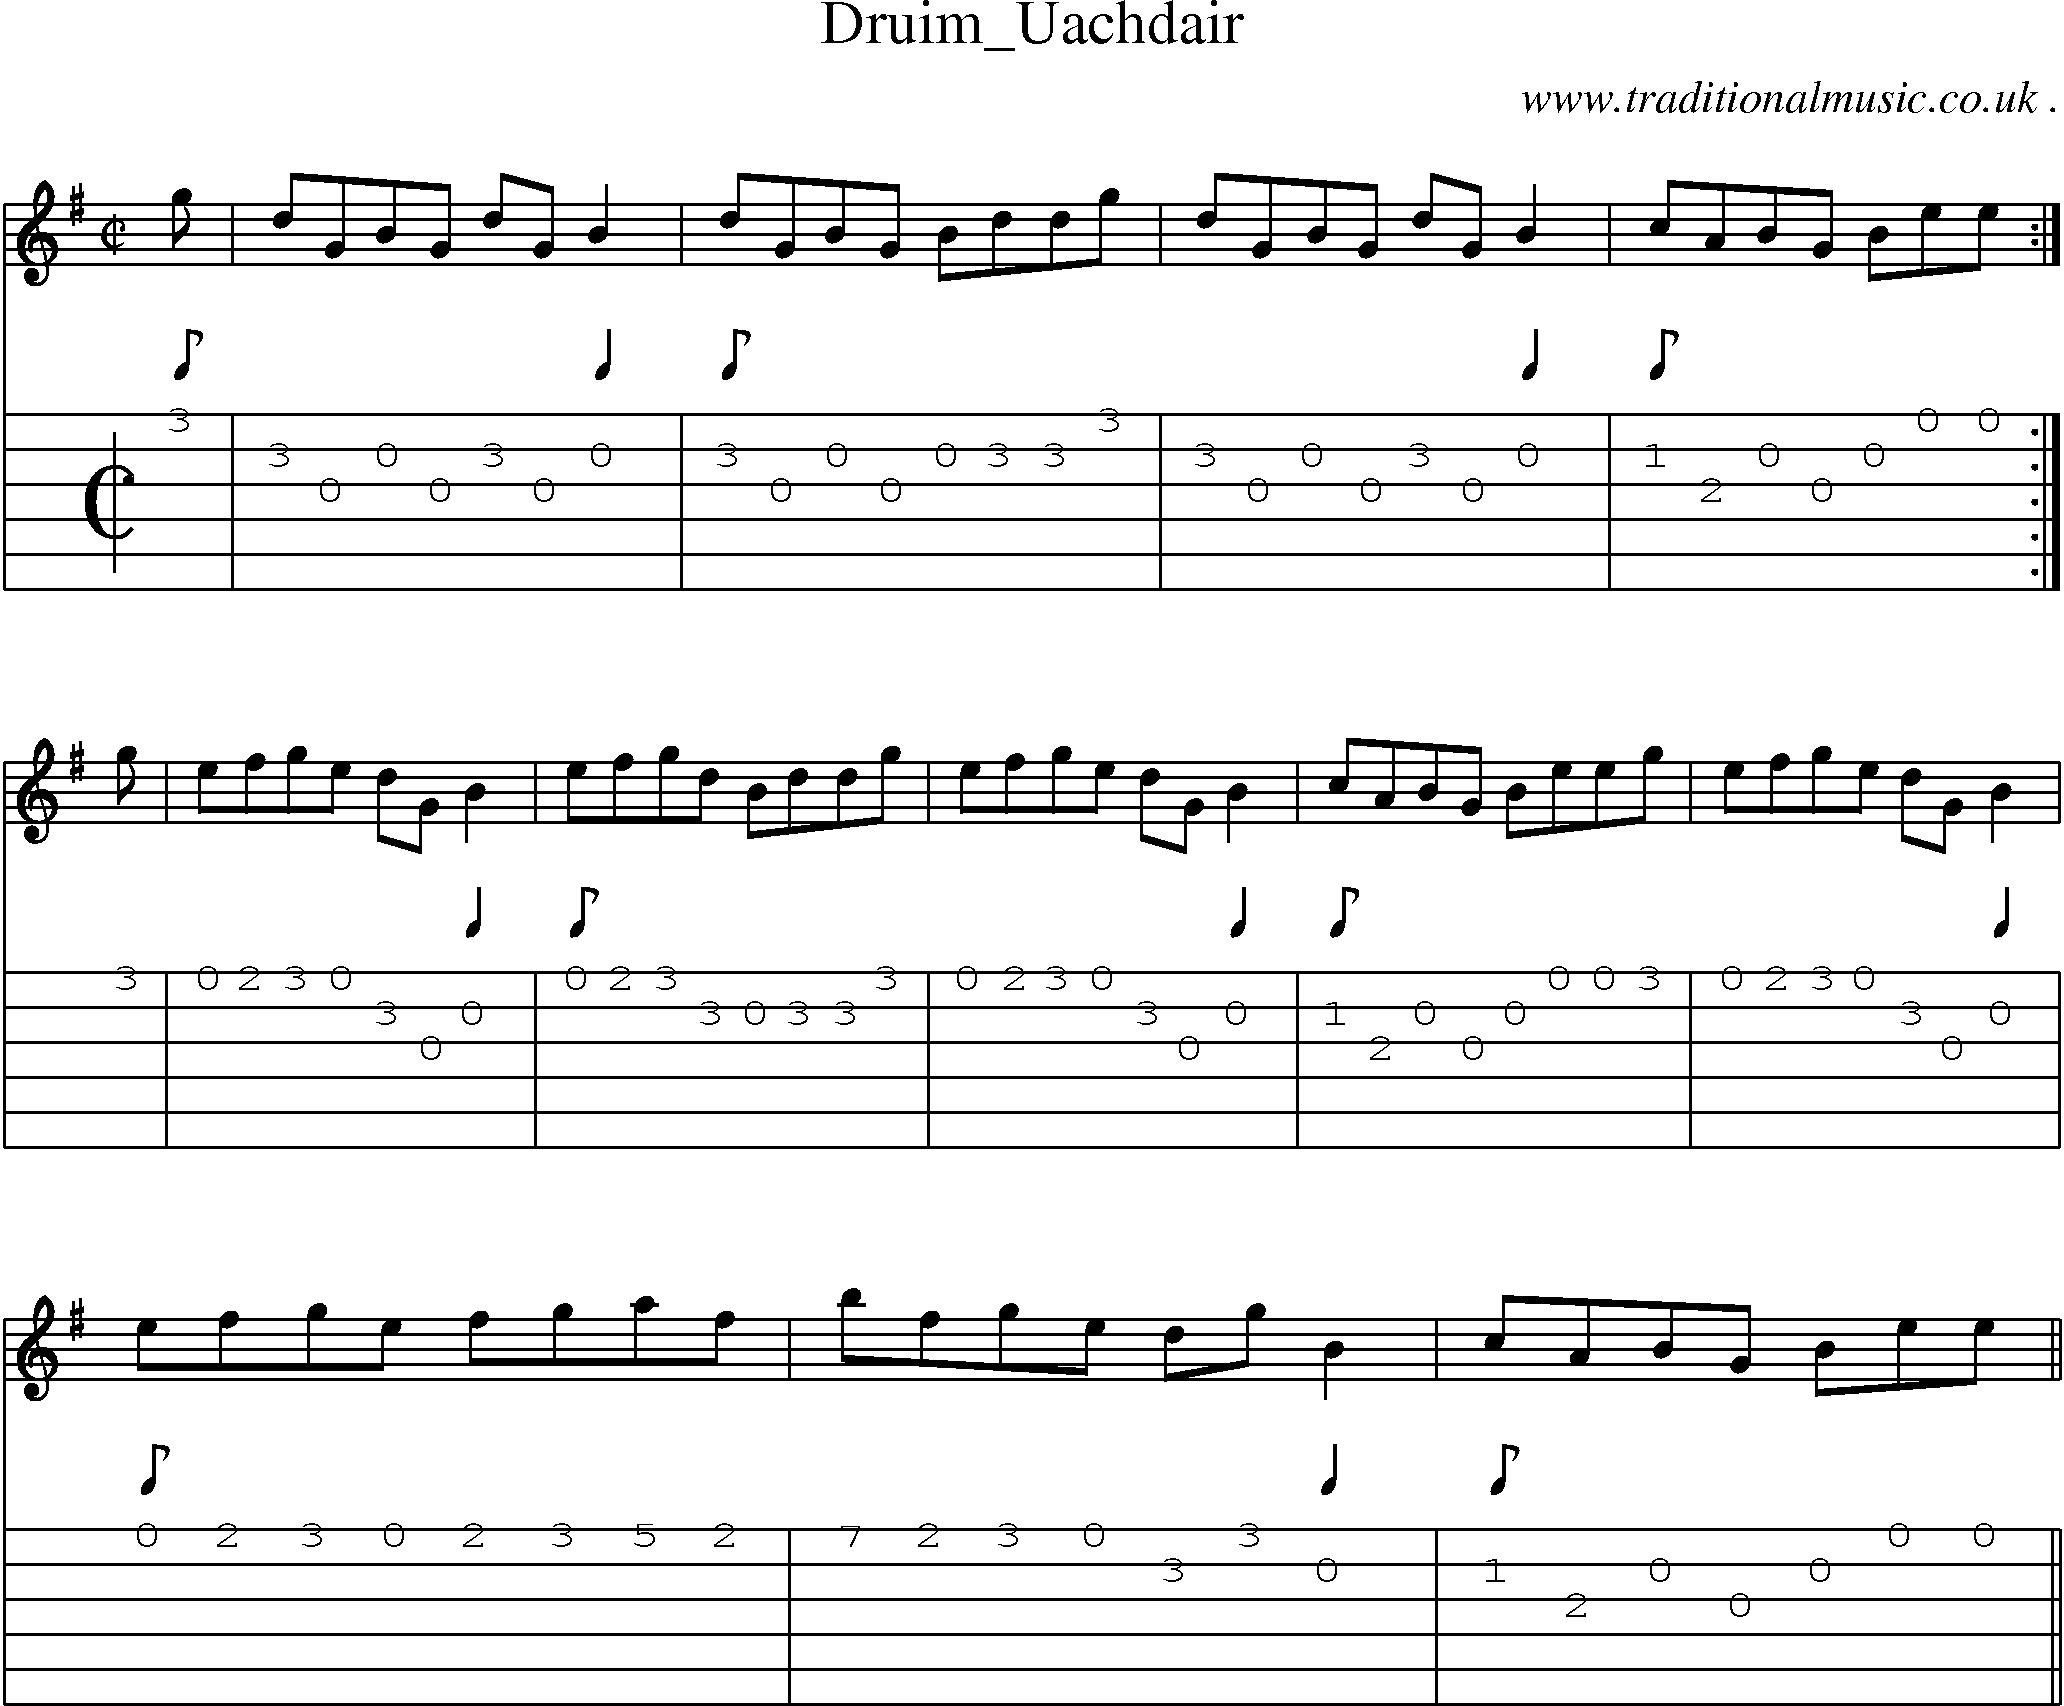 Sheet-music  score, Chords and Guitar Tabs for Druim Uachdair